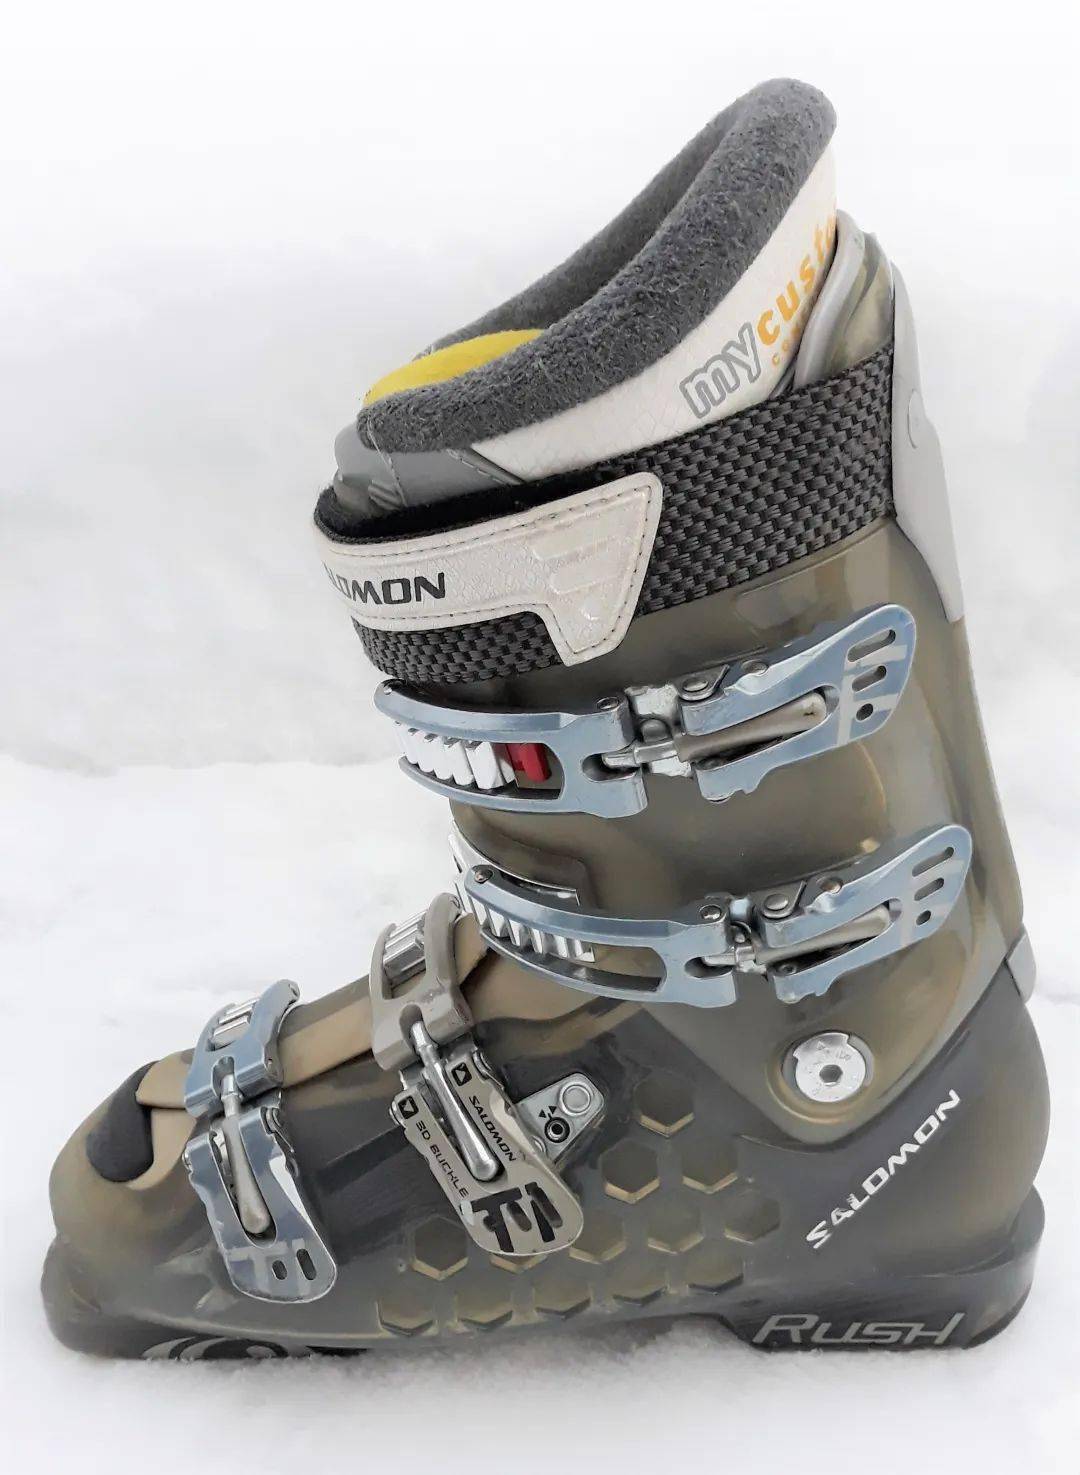 高山滑雪的装备  滑雪鞋通过固定器与滑雪板连接.